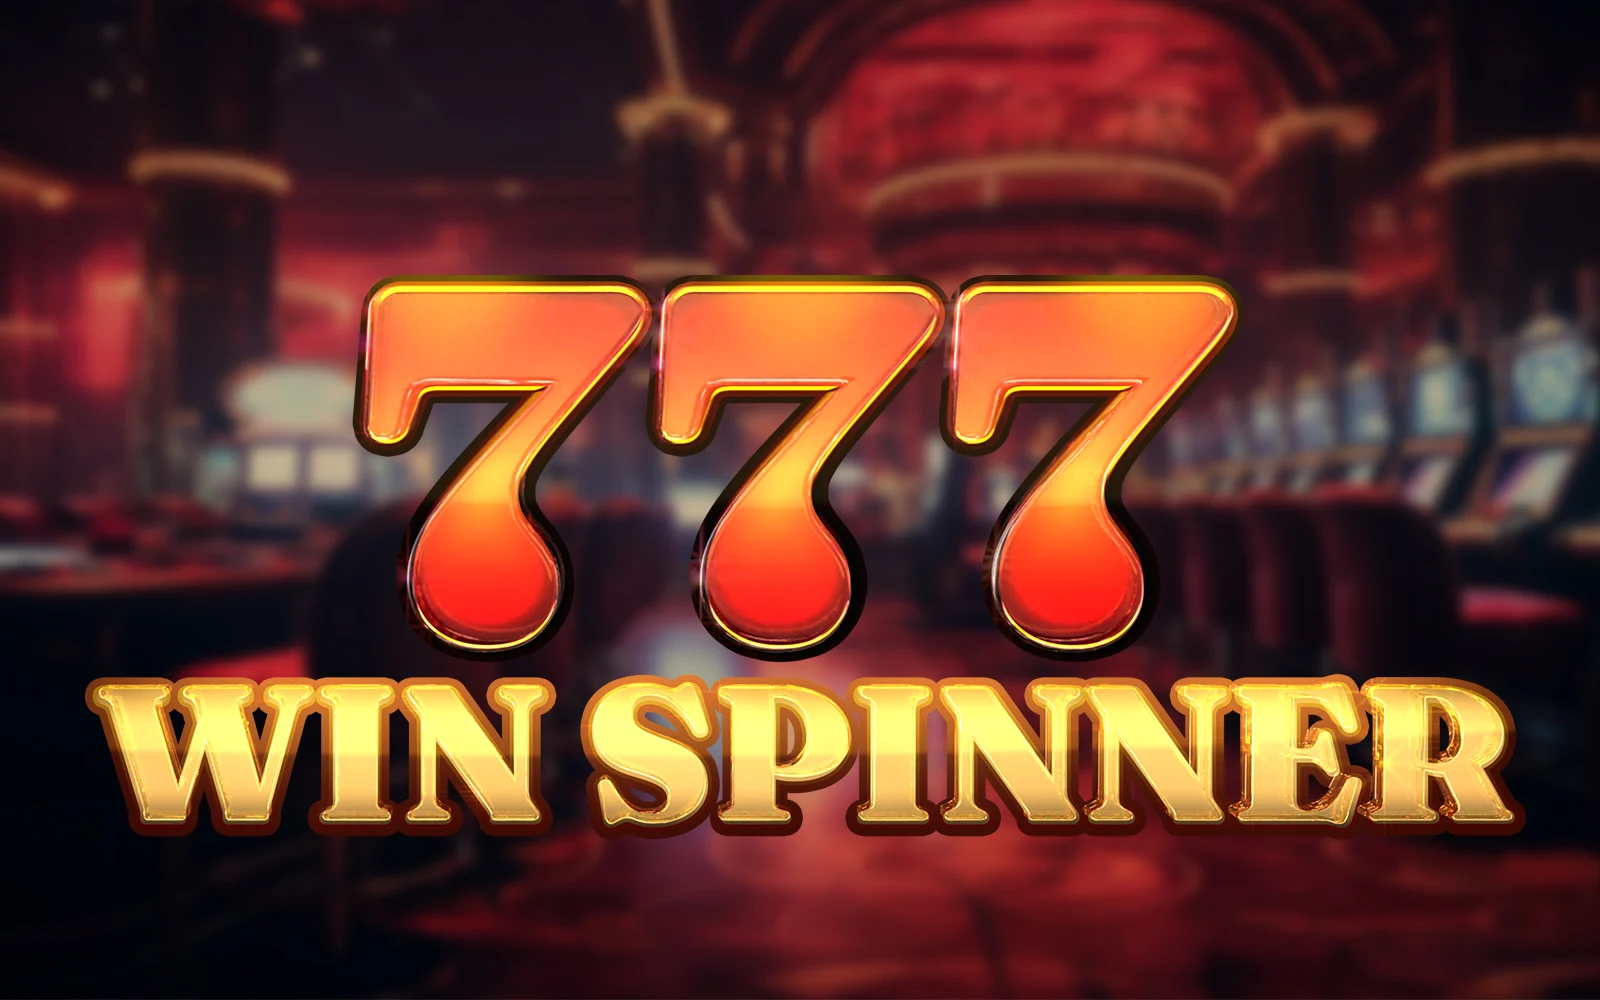 Gioca a 777 Win Spinner sul casino online Starcasino.be